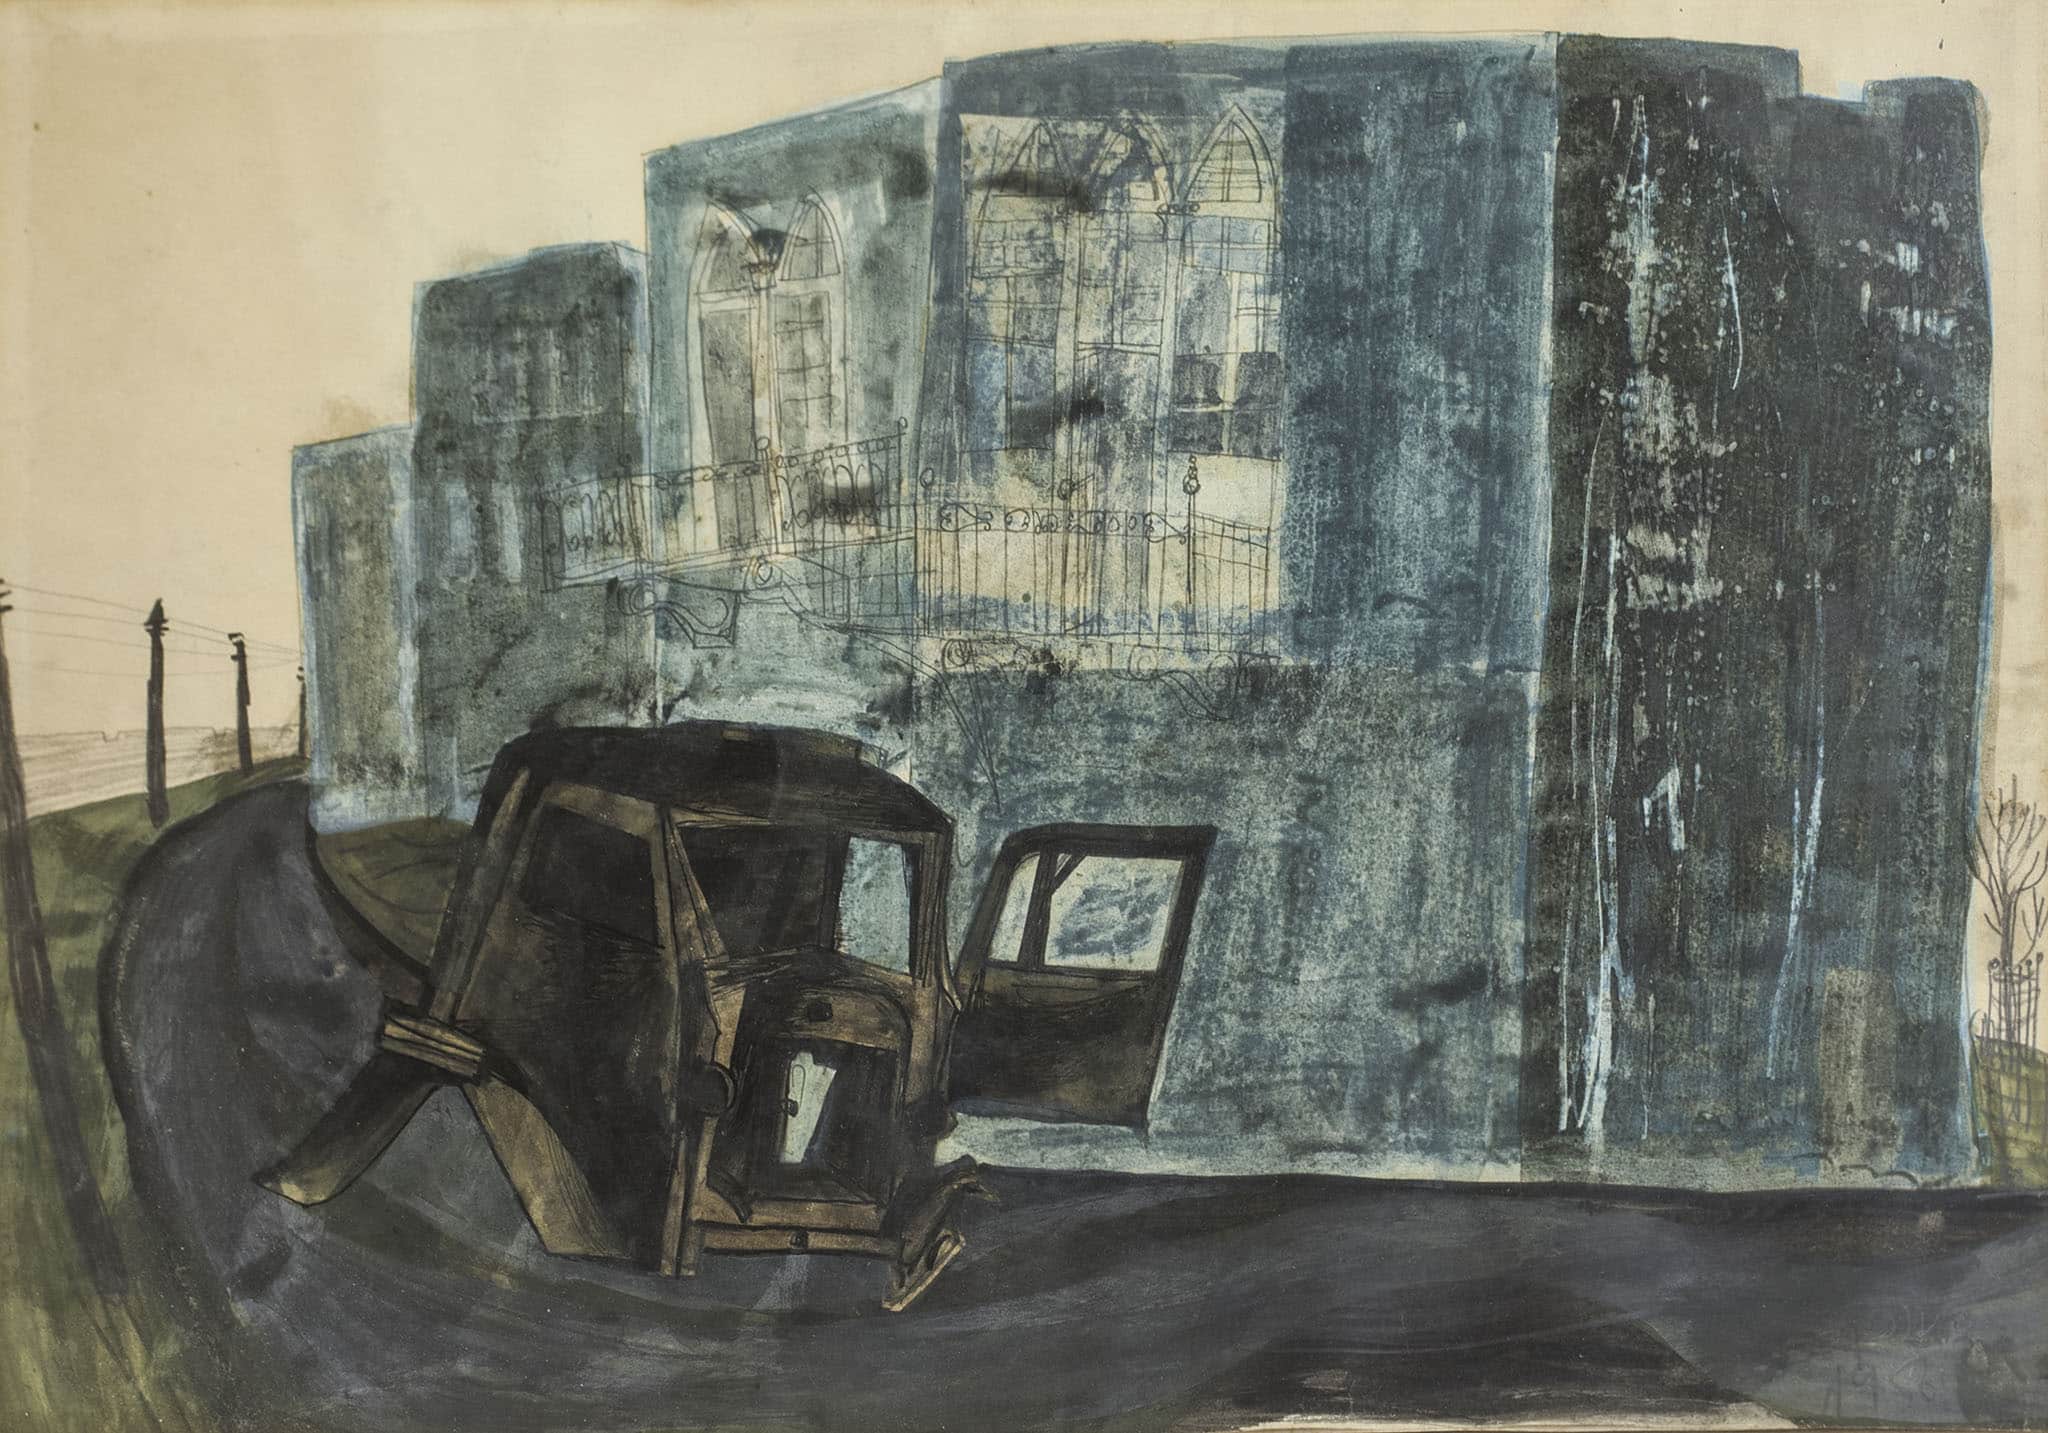 אברהם אופק, "מכונית בנוף אורבני", 1958, אקוורל ועיפרון על נייר, 50x35 ס"מ